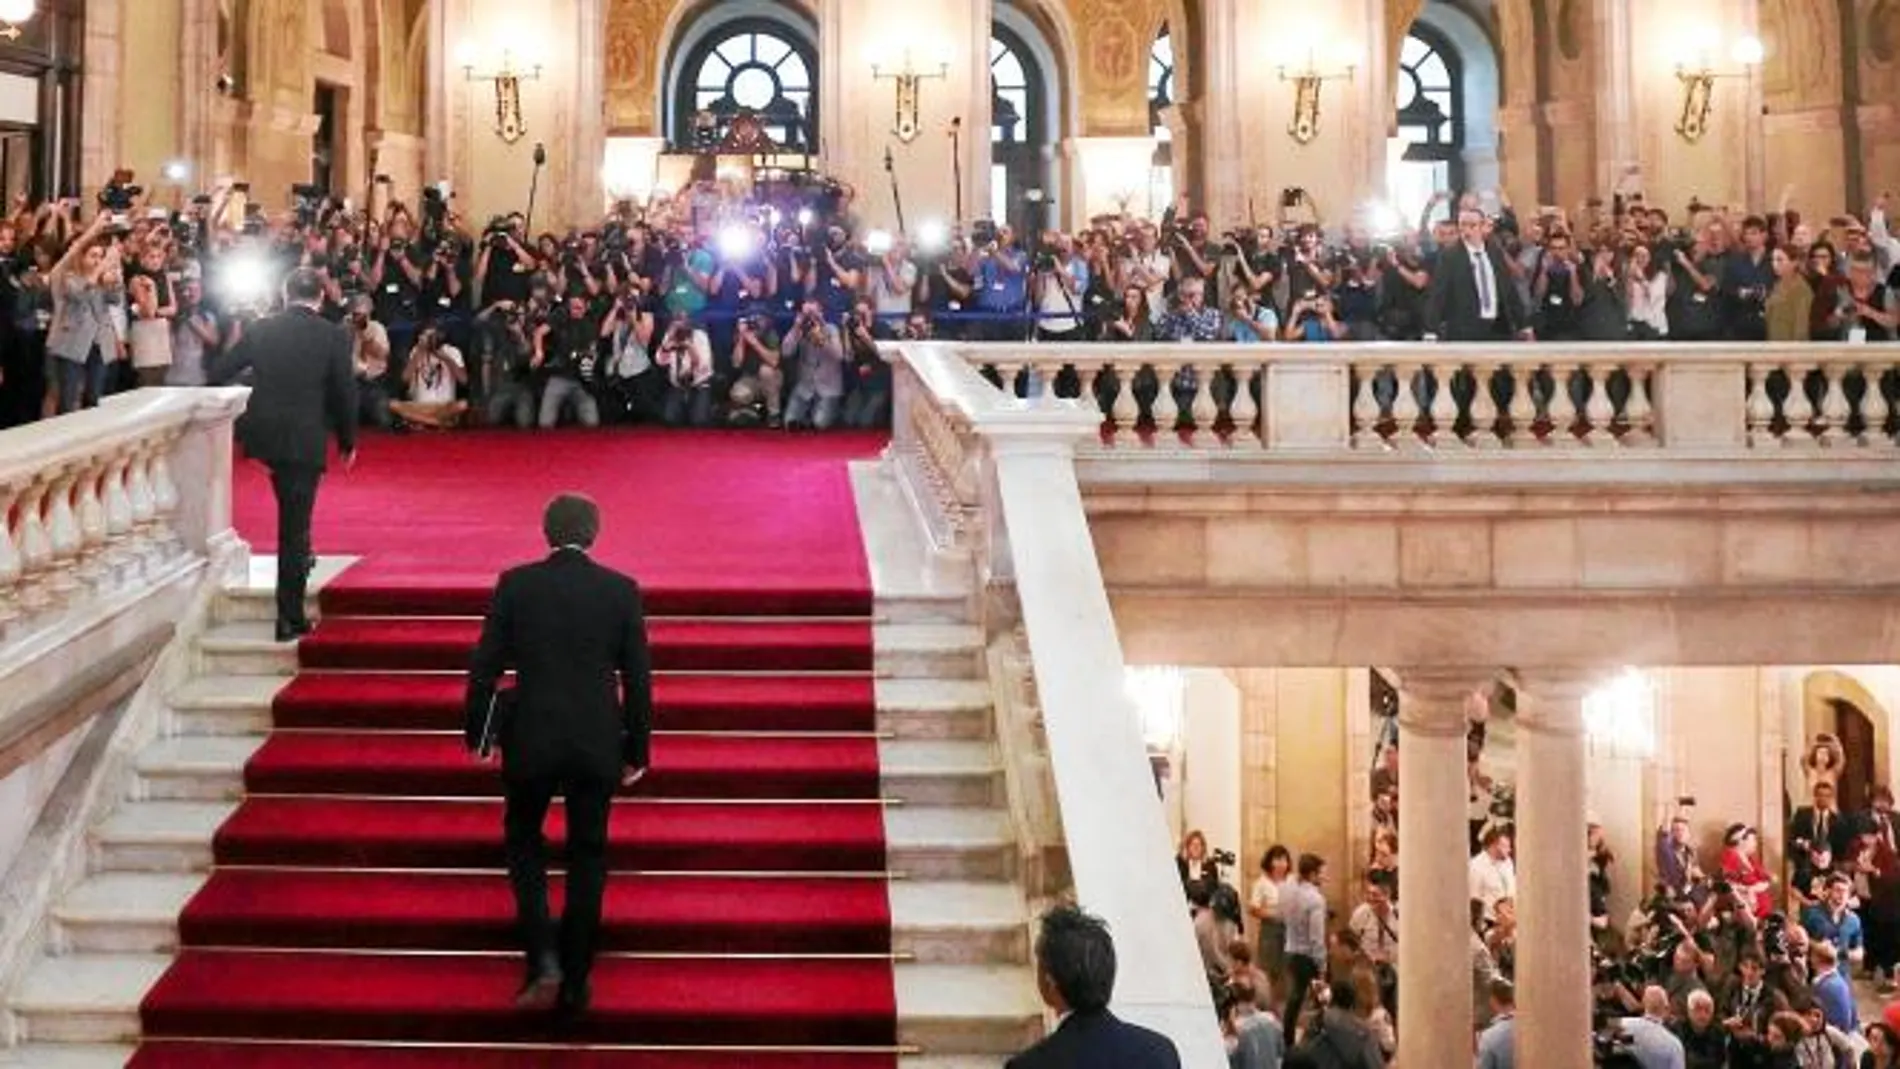 El presidente de la Generalitat, Carles Puigdemont, concitó ayer toda la atención en el Parlament de Cataluña